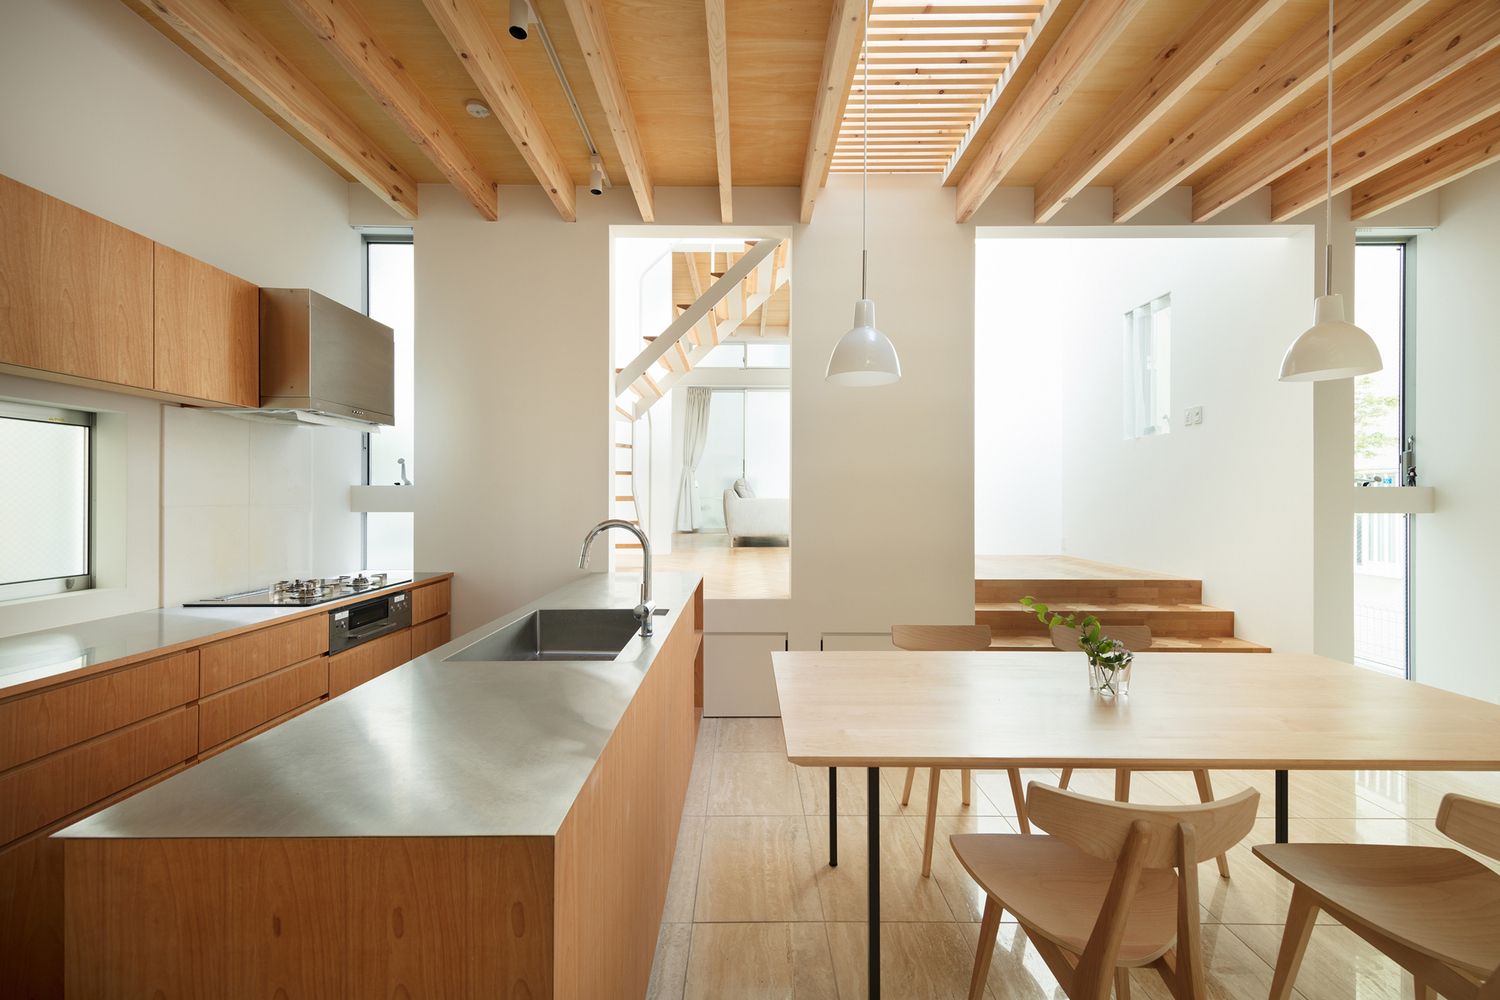 Trần, sàn, hầu hết nội thất đều bằng chất liệu gỗ màu sáng tạo cảm giác ấm cúng, thân thiện.